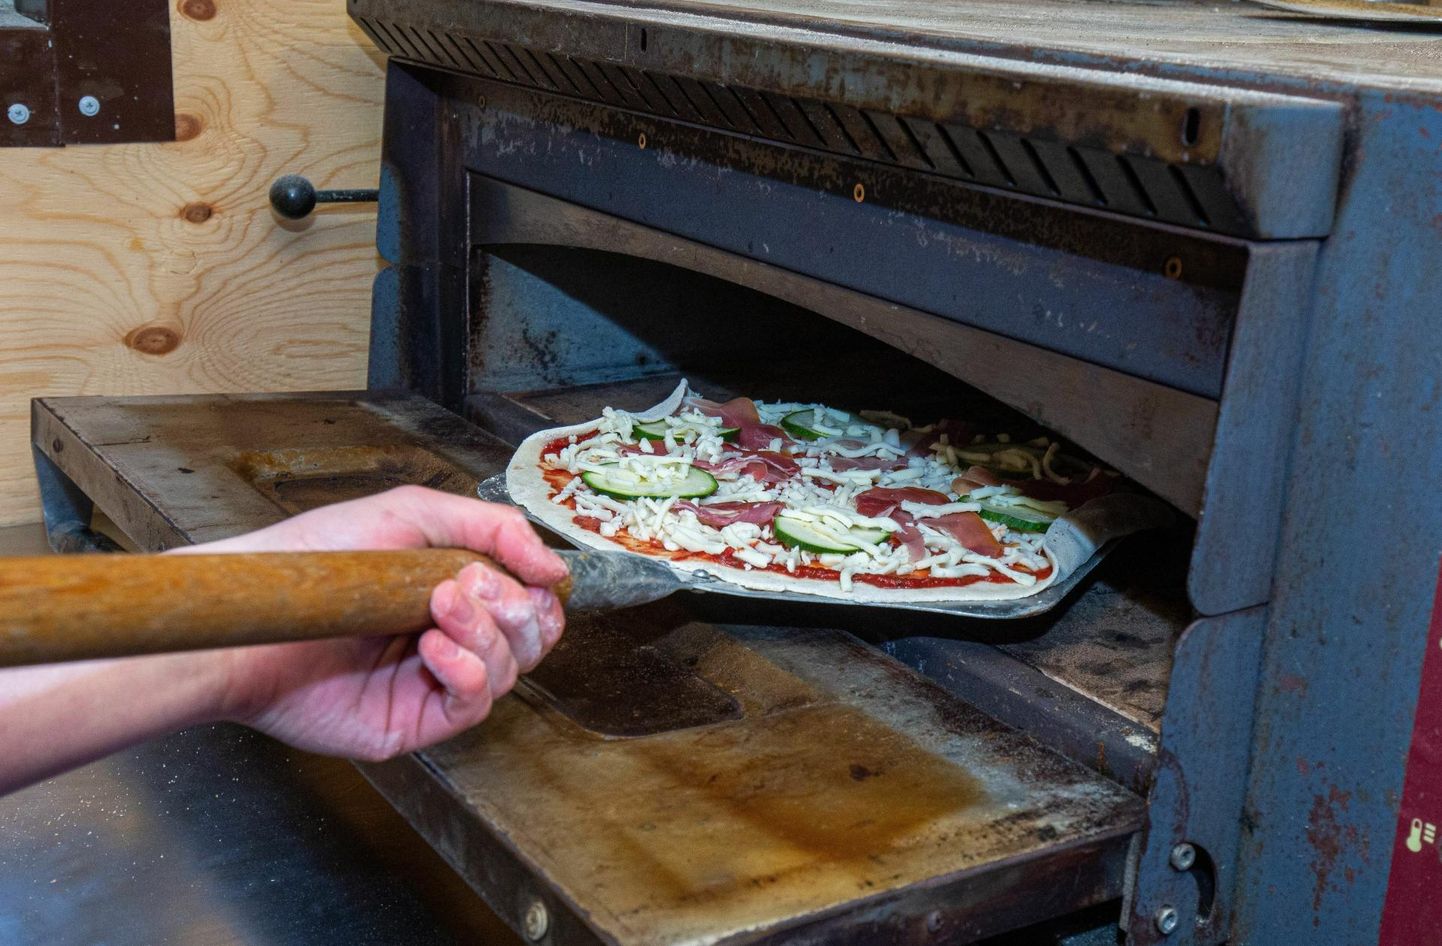 Pizzeria Pantalones valmivad itaaliapärased pitsad. Nüüd laienes ettevõte pealinna ning nende toidukaravan seisab nüüd Paavli kultuurivabrikus. 